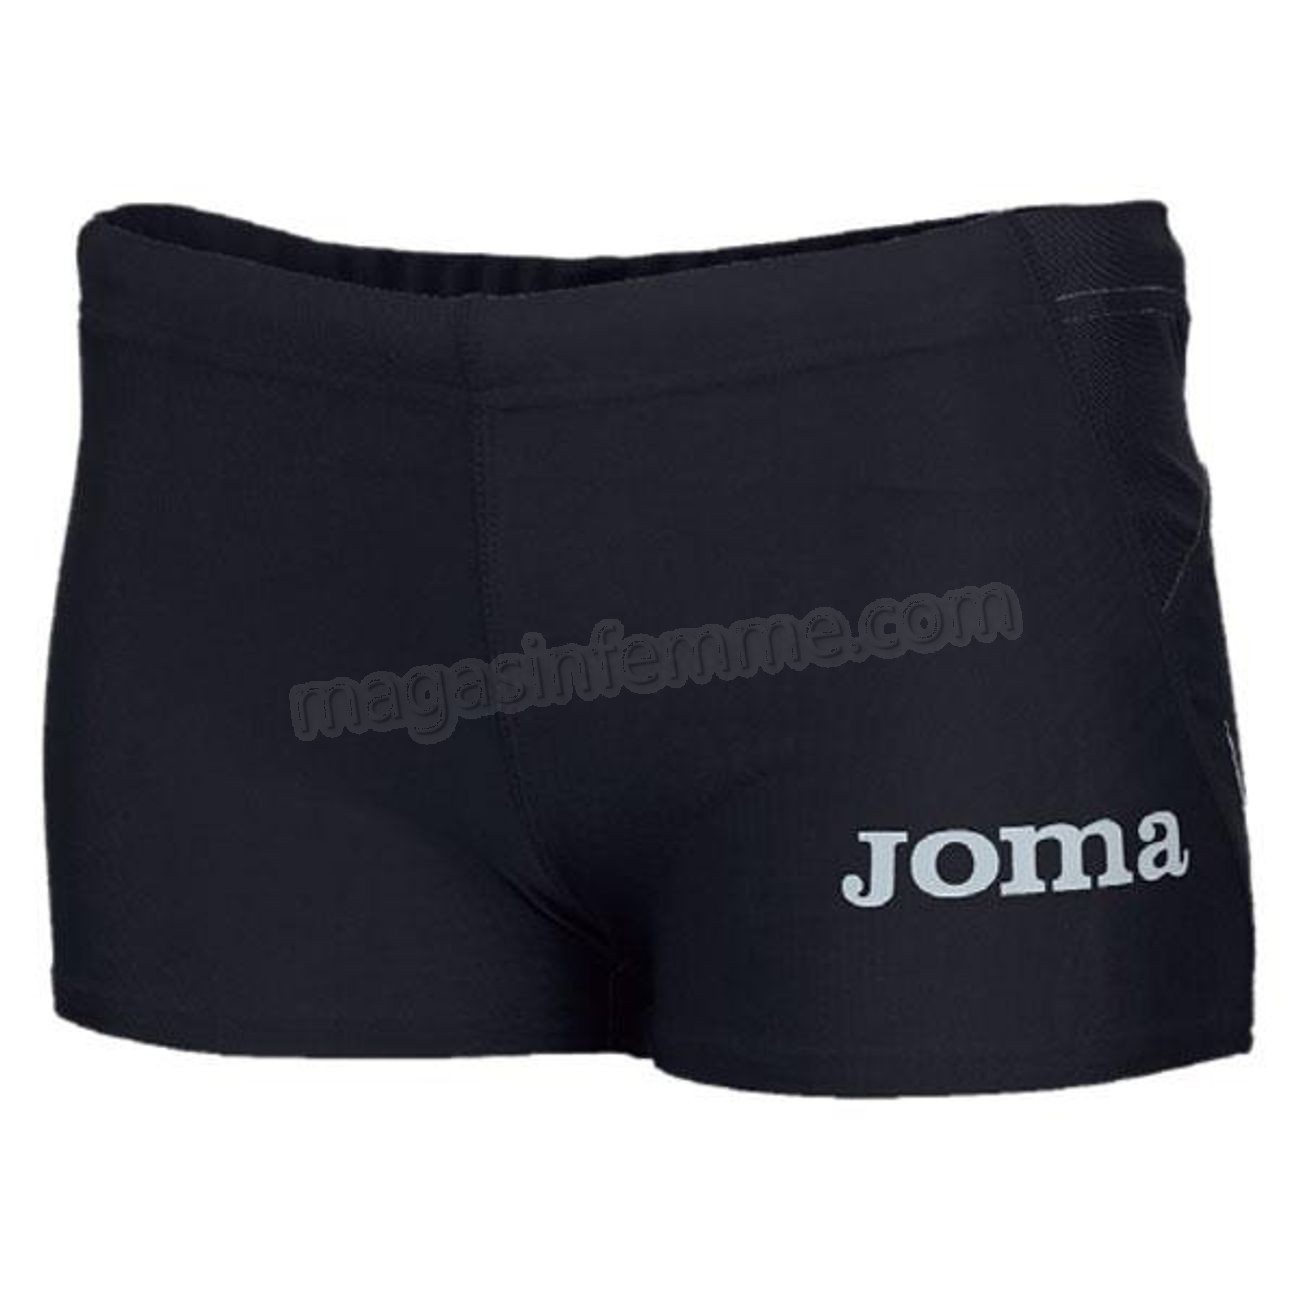 Joma-running femme JOMA Joma Elite Ii Shorts en solde - Joma-running femme JOMA Joma Elite Ii Shorts en solde